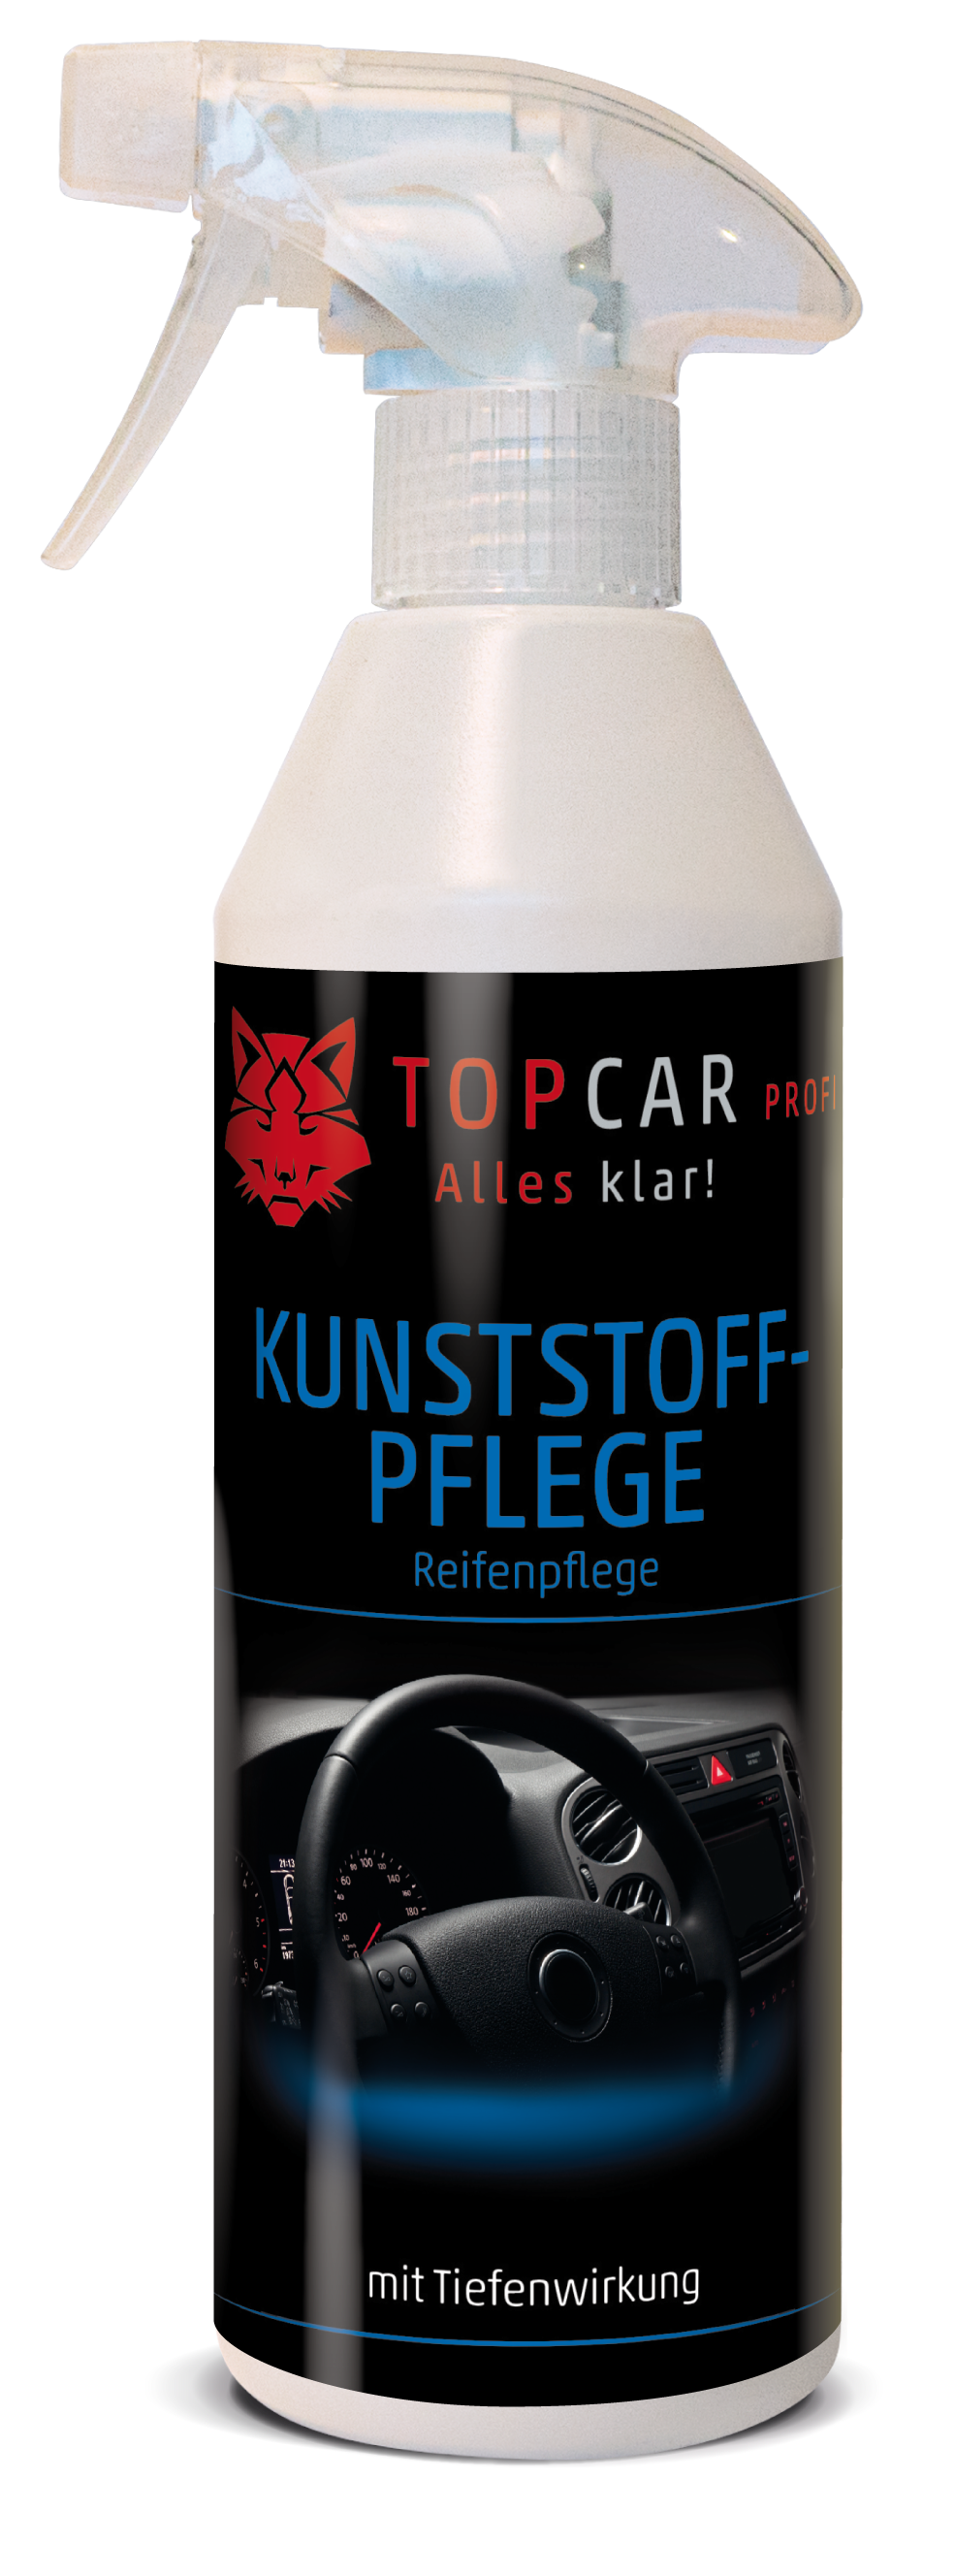 TOP CAR Kunststoffpflege mit Tiefenwirkung - Reifenpflege - 500ml Sprühflasche - Weigola Hygienevertrieb -  - Weigola Hygienevertrieb